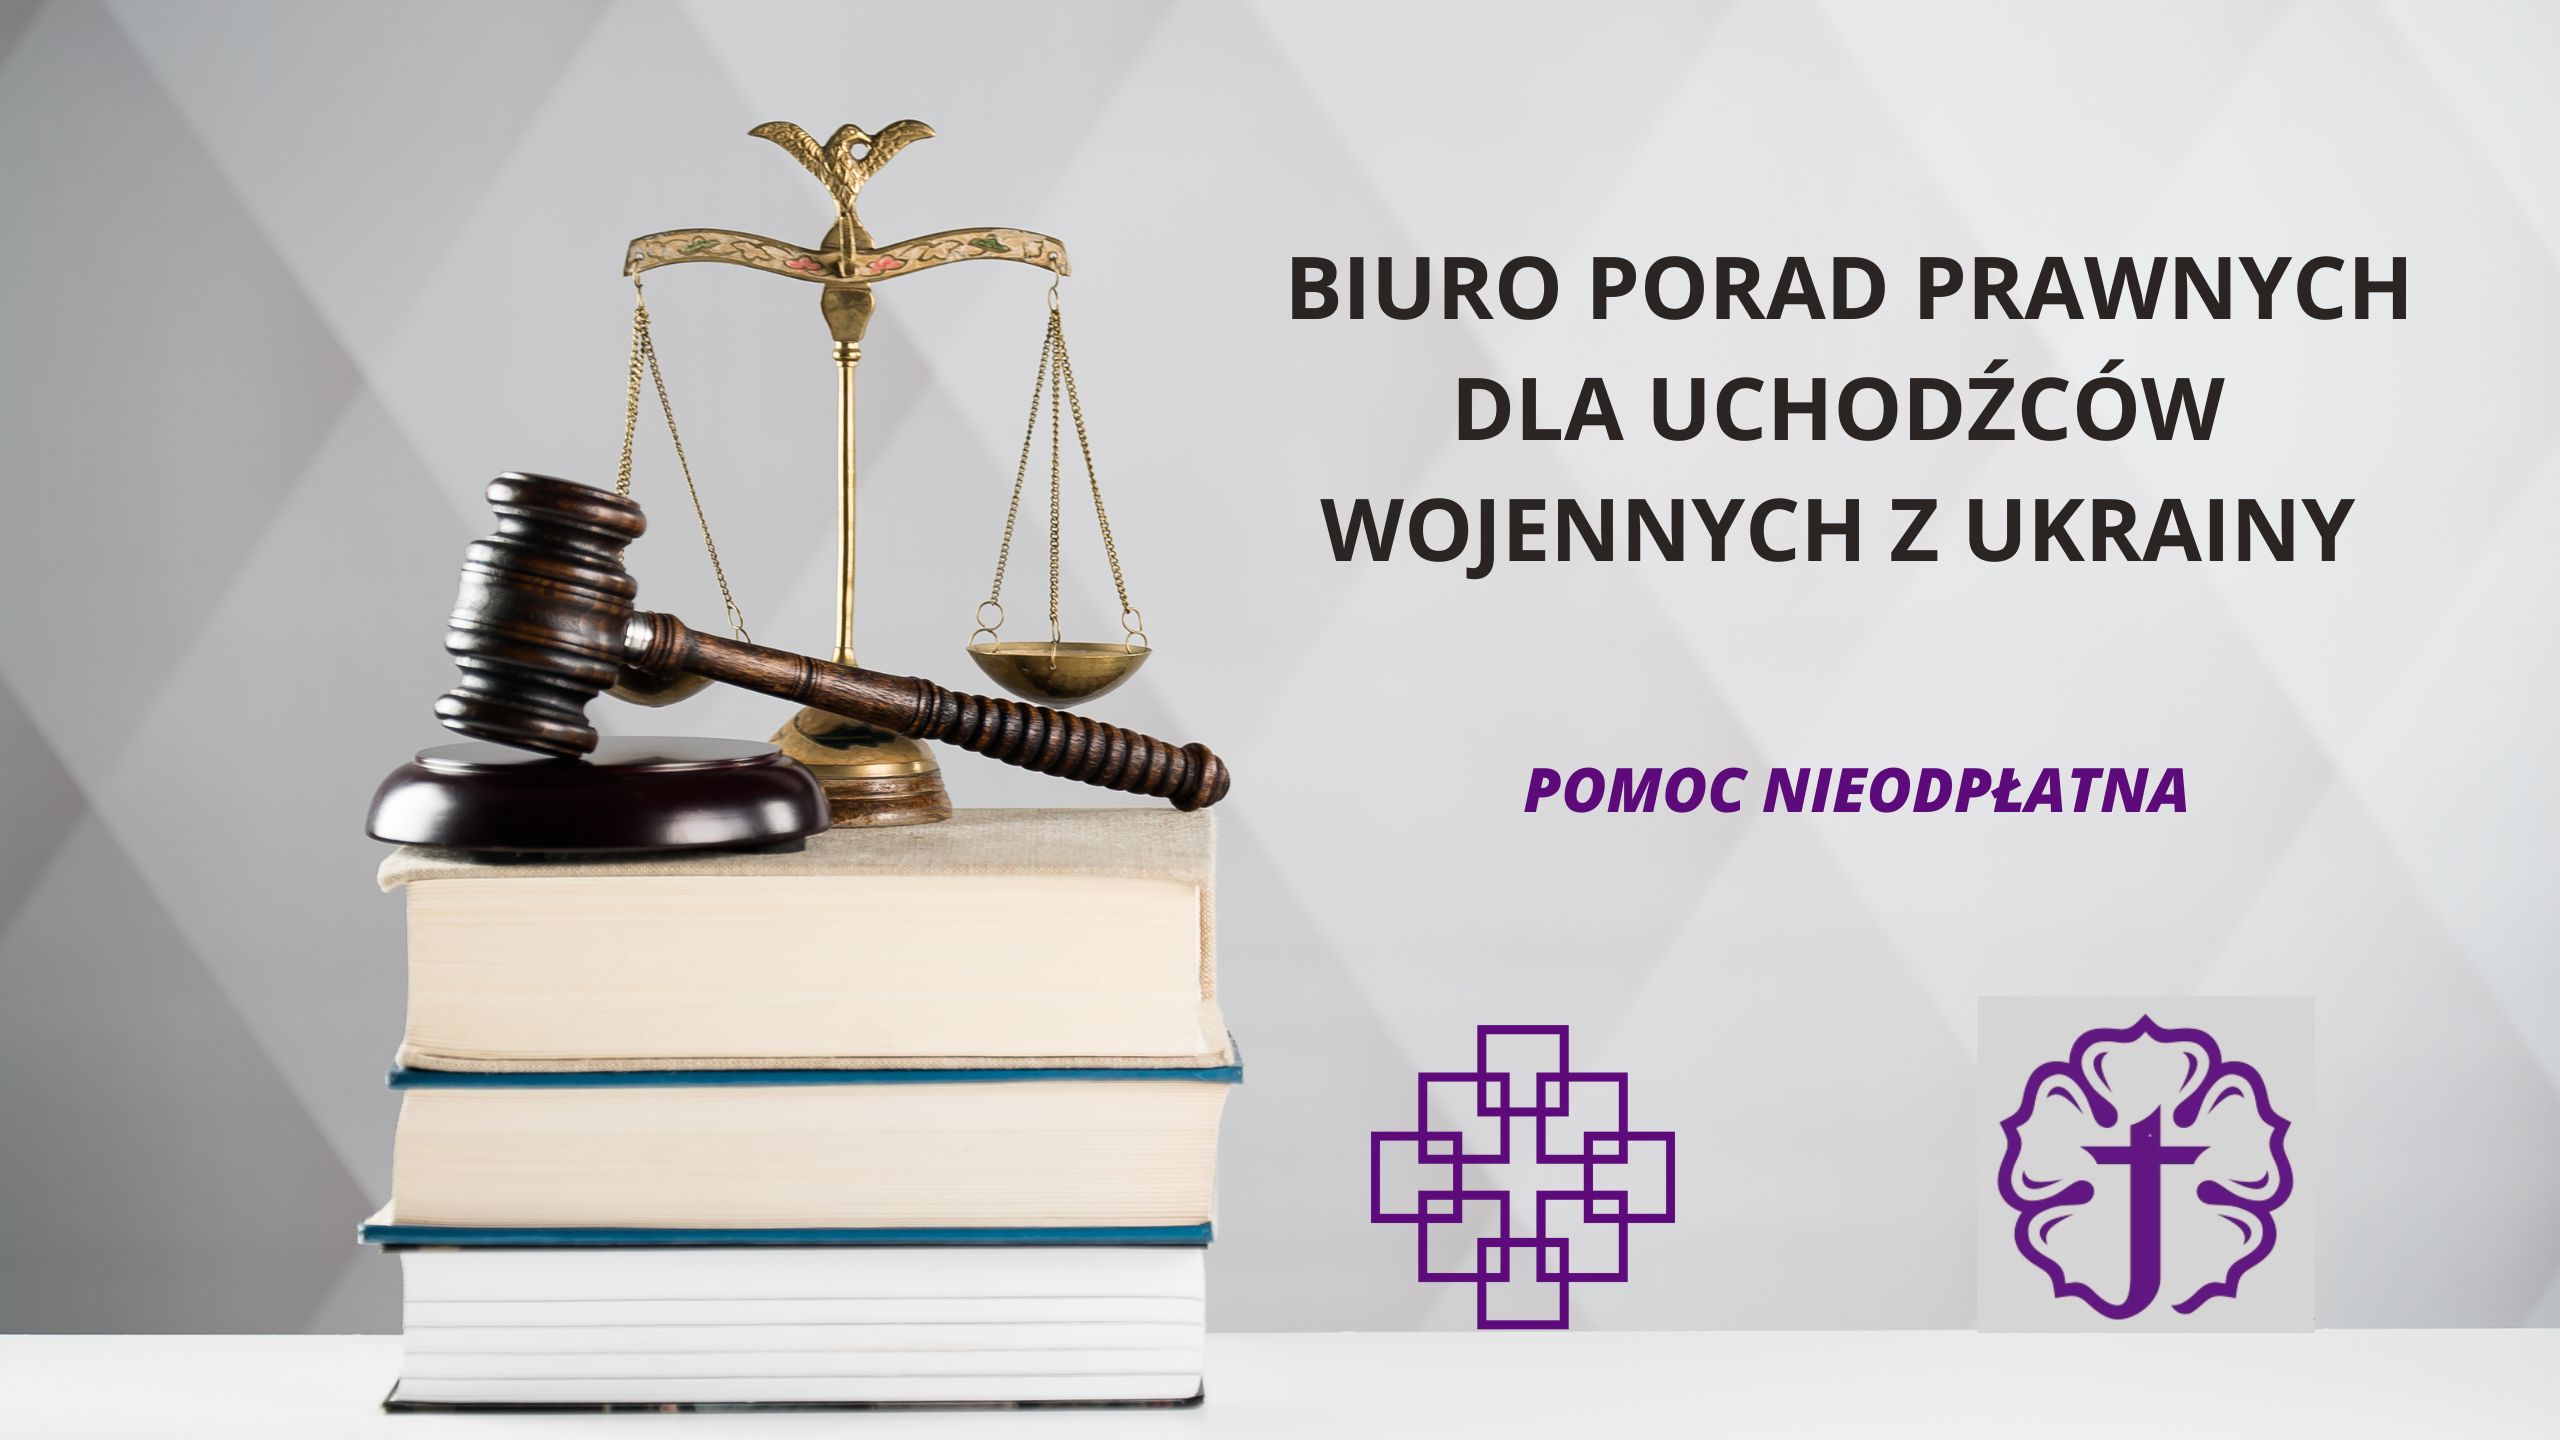 Biuro Porad Prawnych dla uchodźców wojennych z Ukrainy